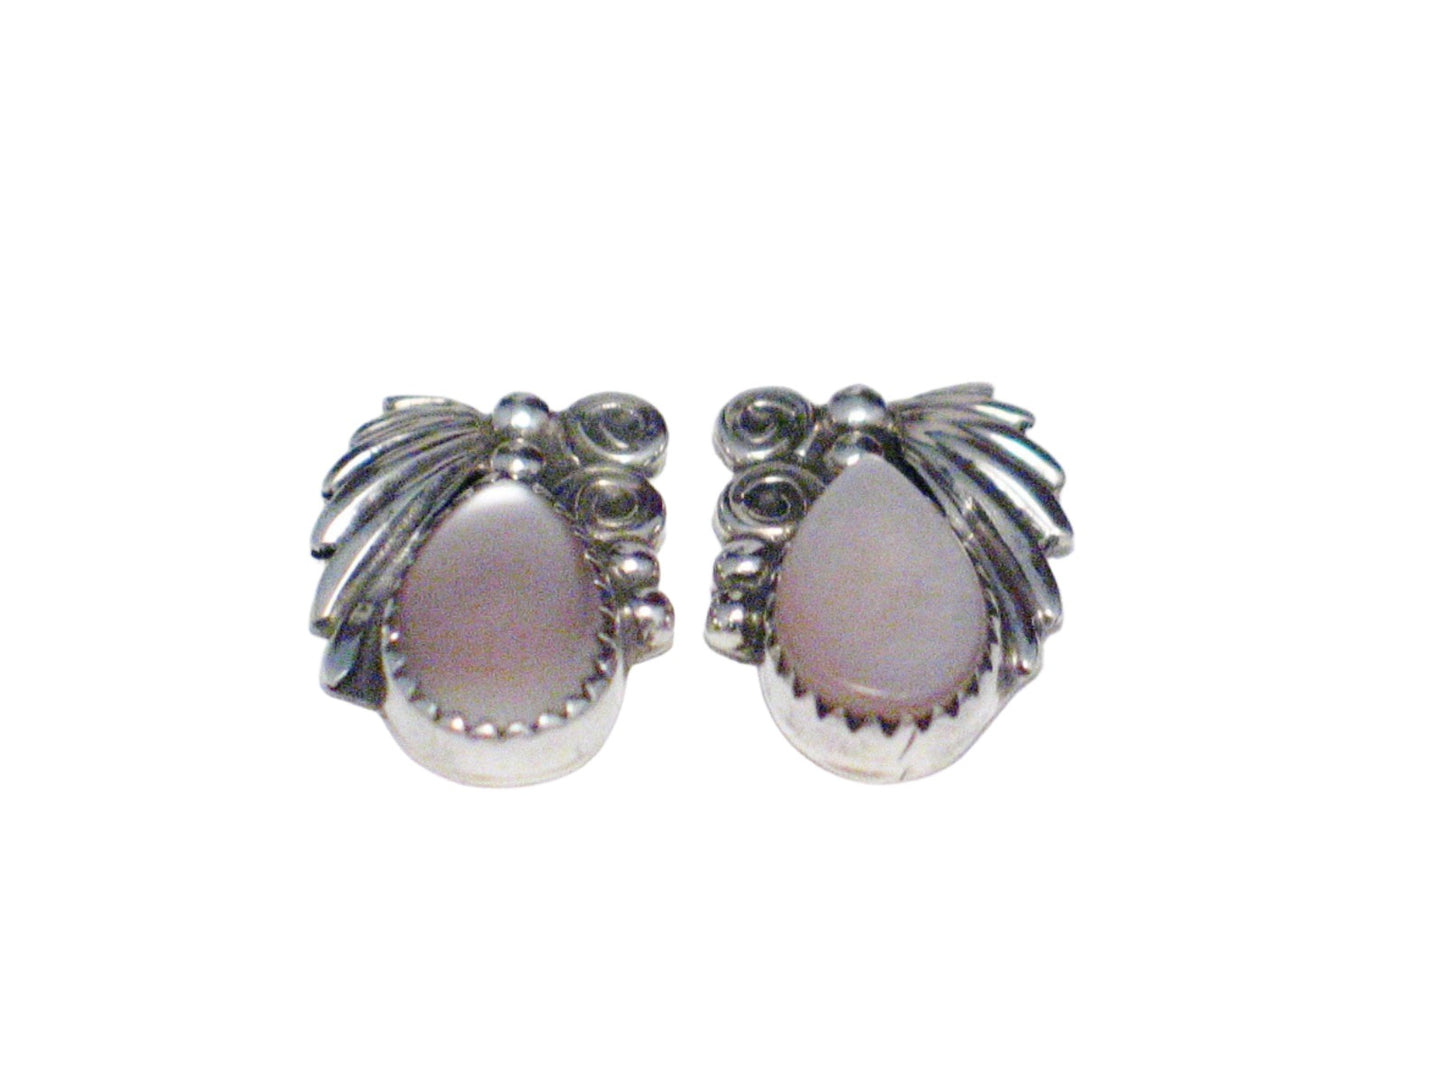 Earrings | Vintage Sterling Silver Southwestern Pink Pearl Earrings | Jewelry